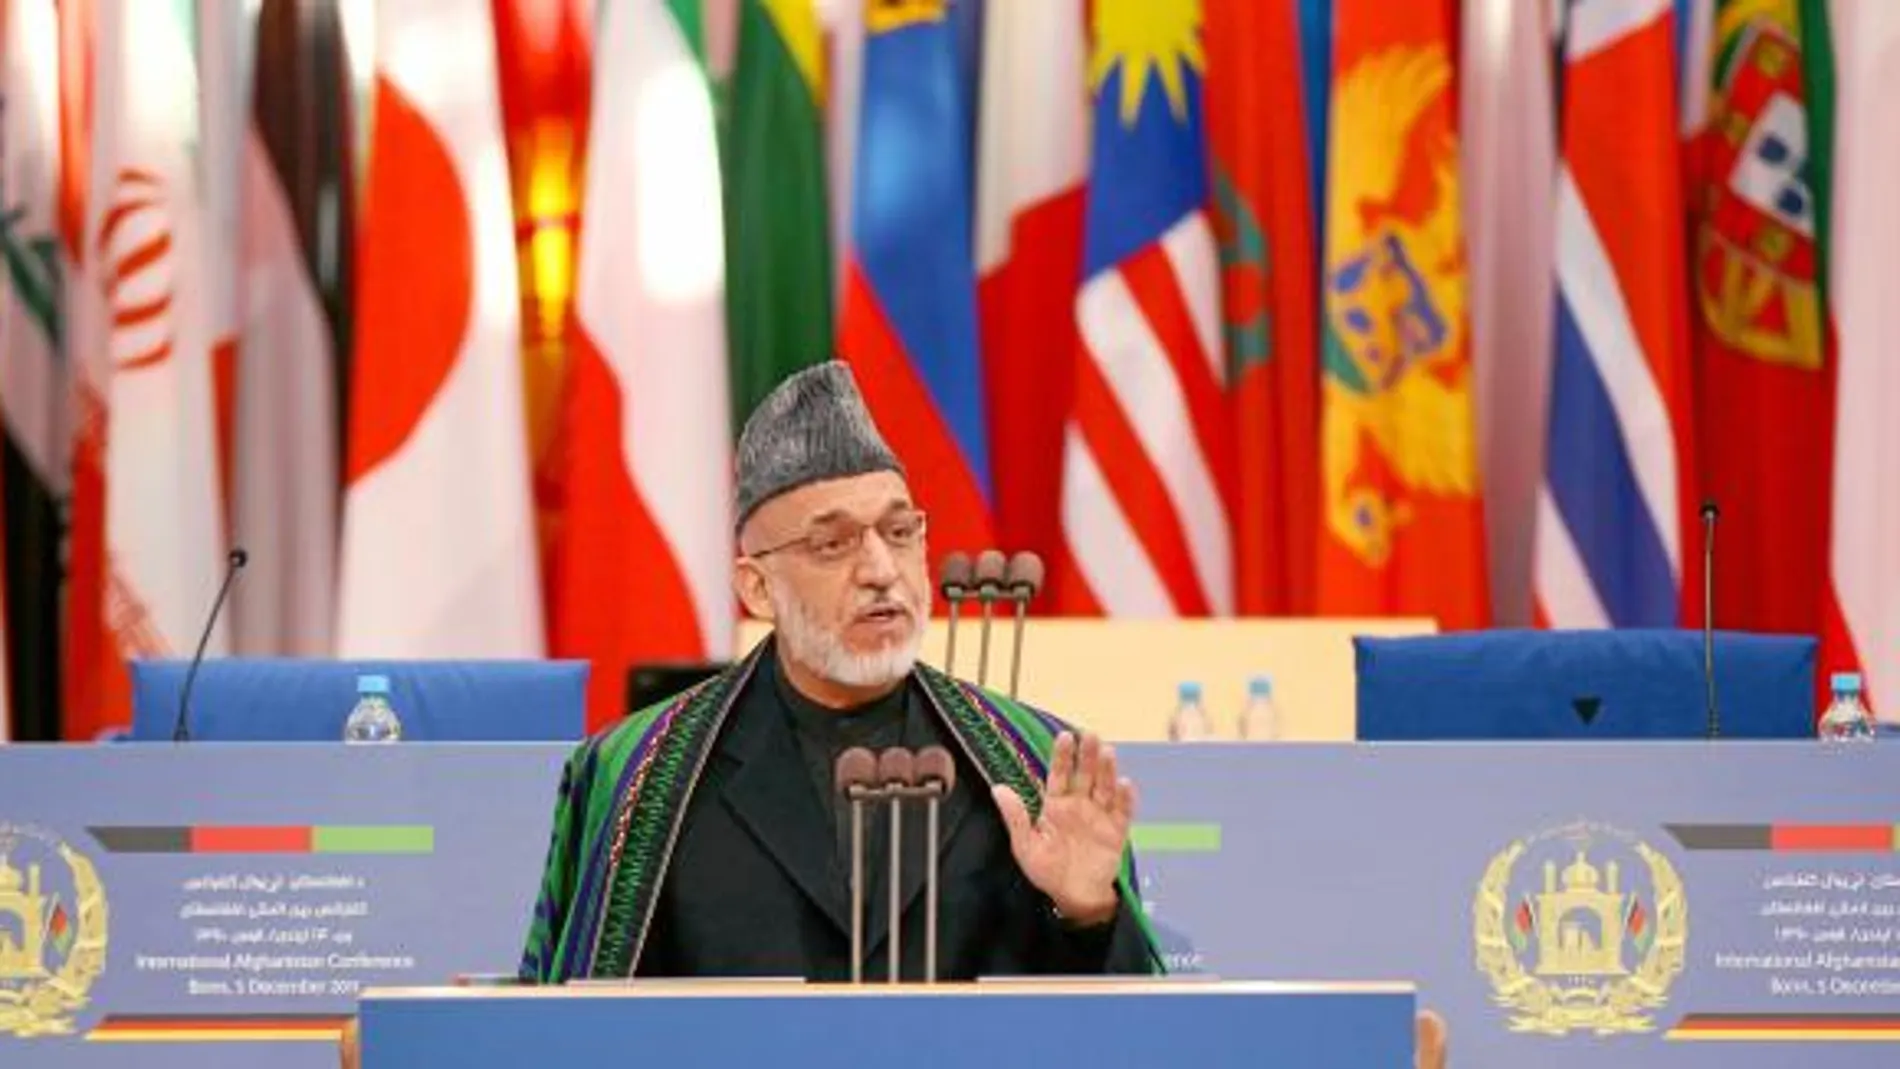 El presidente afgano, Hamid Karzai, durante su discurso ayer en Bonn